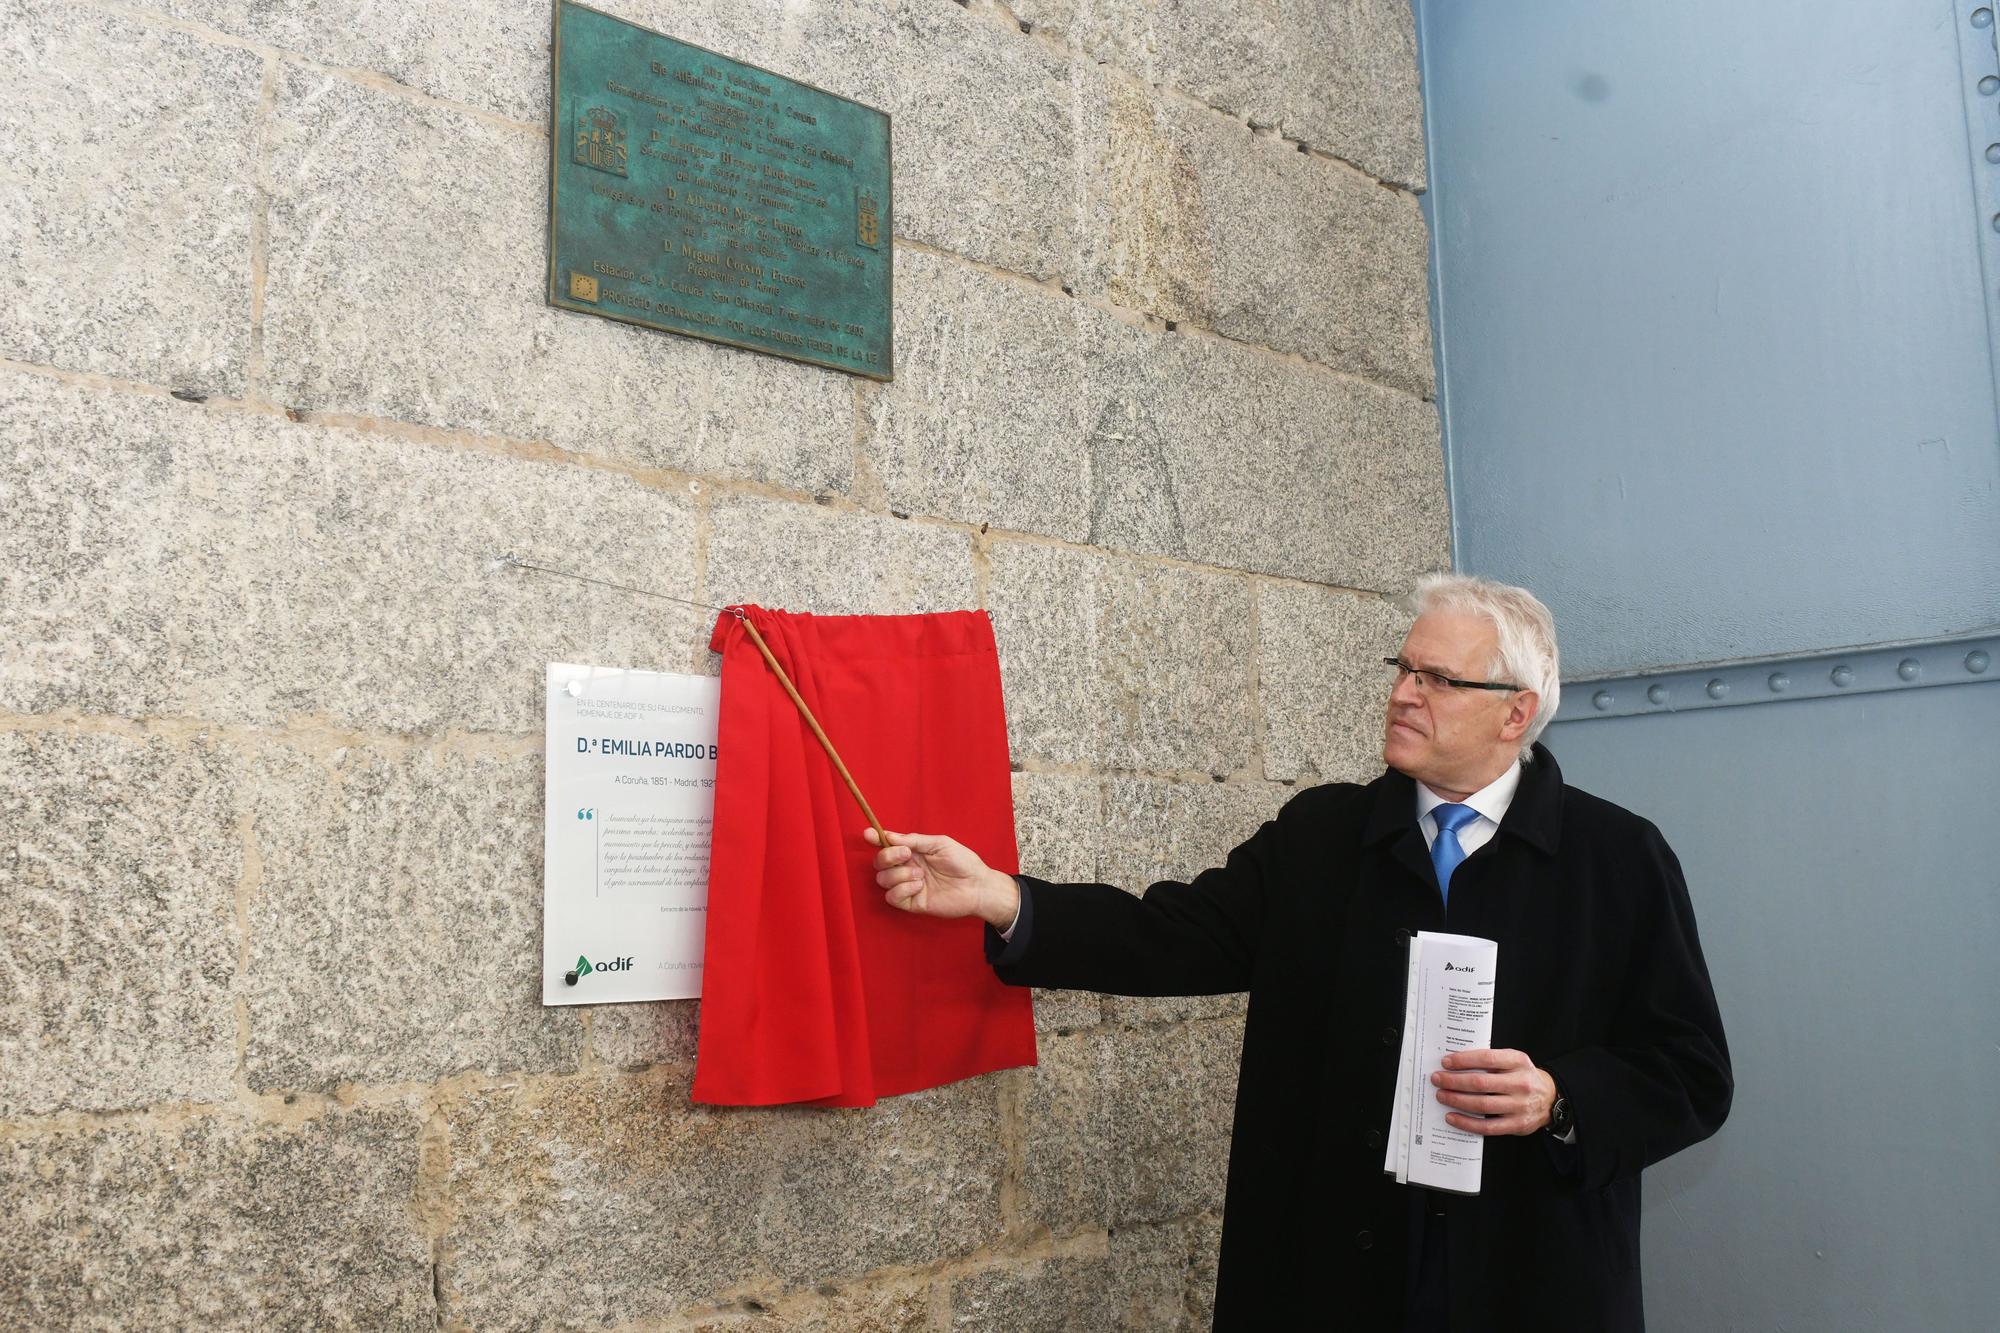 Adif homenajea a Pardo Bazán en el centenario de su fallecimiento con una placa en la estación de tren